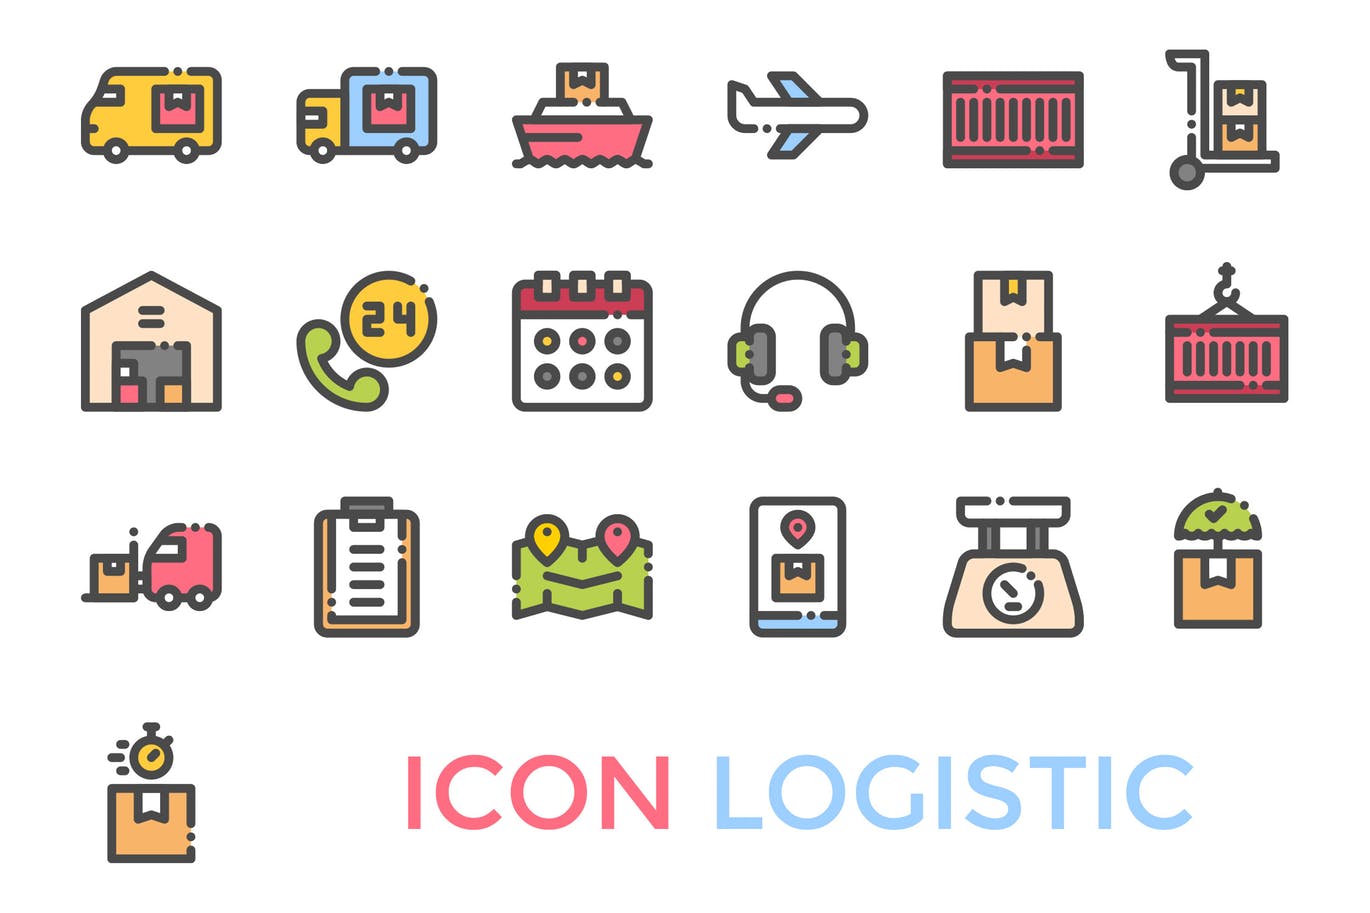 19枚物流配送主题矢量蚂蚁素材精选图标 Logistics Icon插图